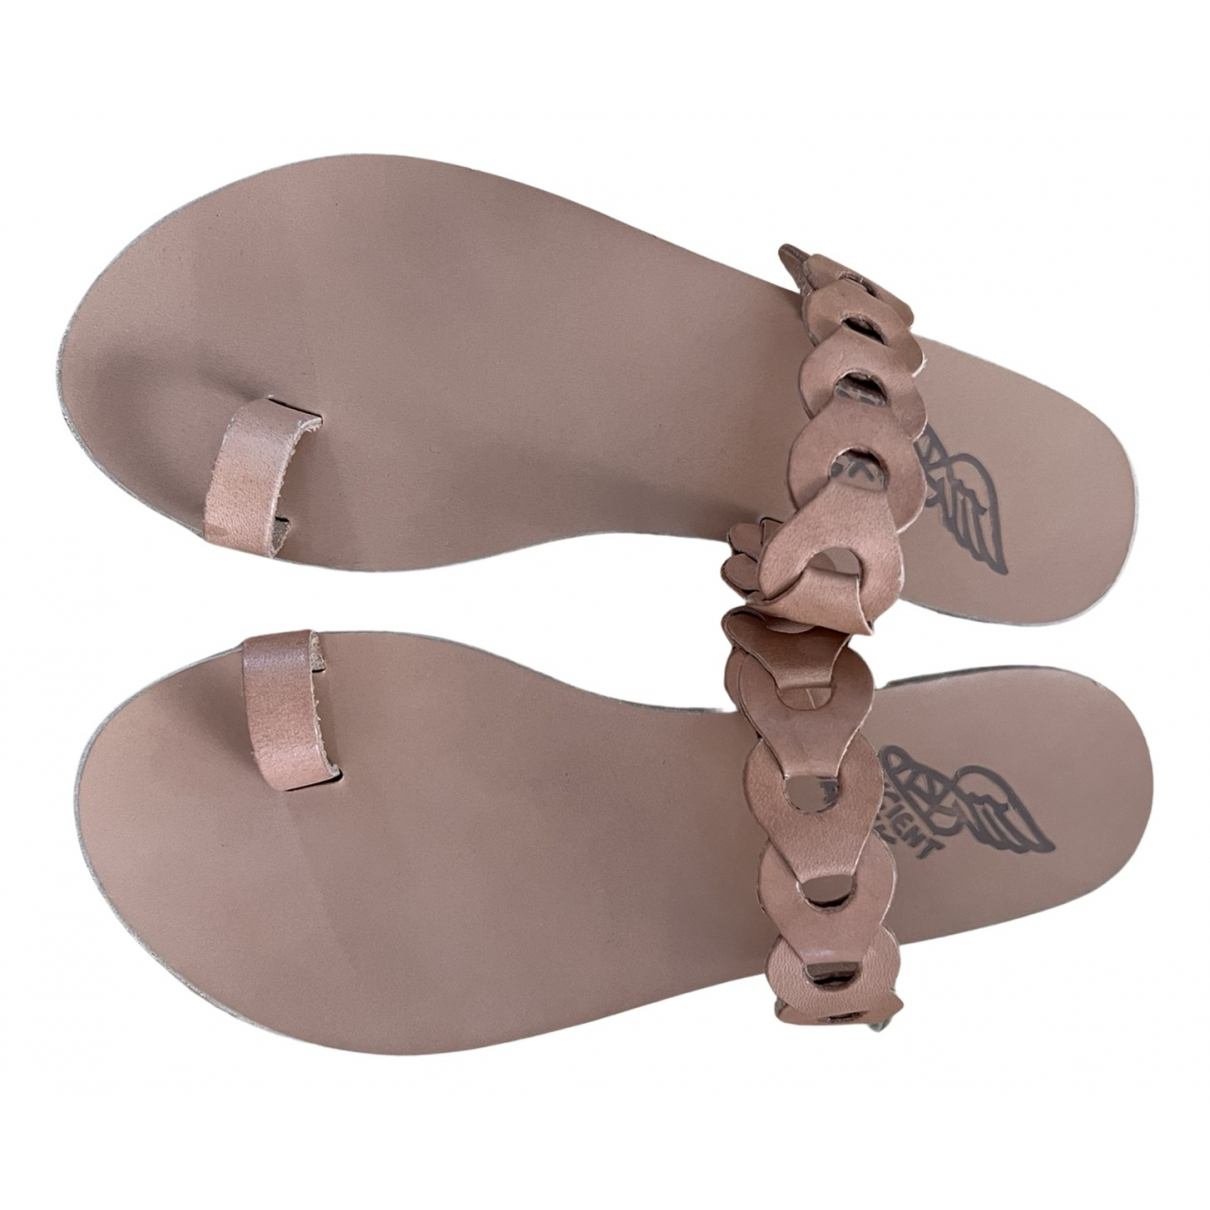 Sandalias romanas de Cuero - Ancient Greek Sandals - Modalova